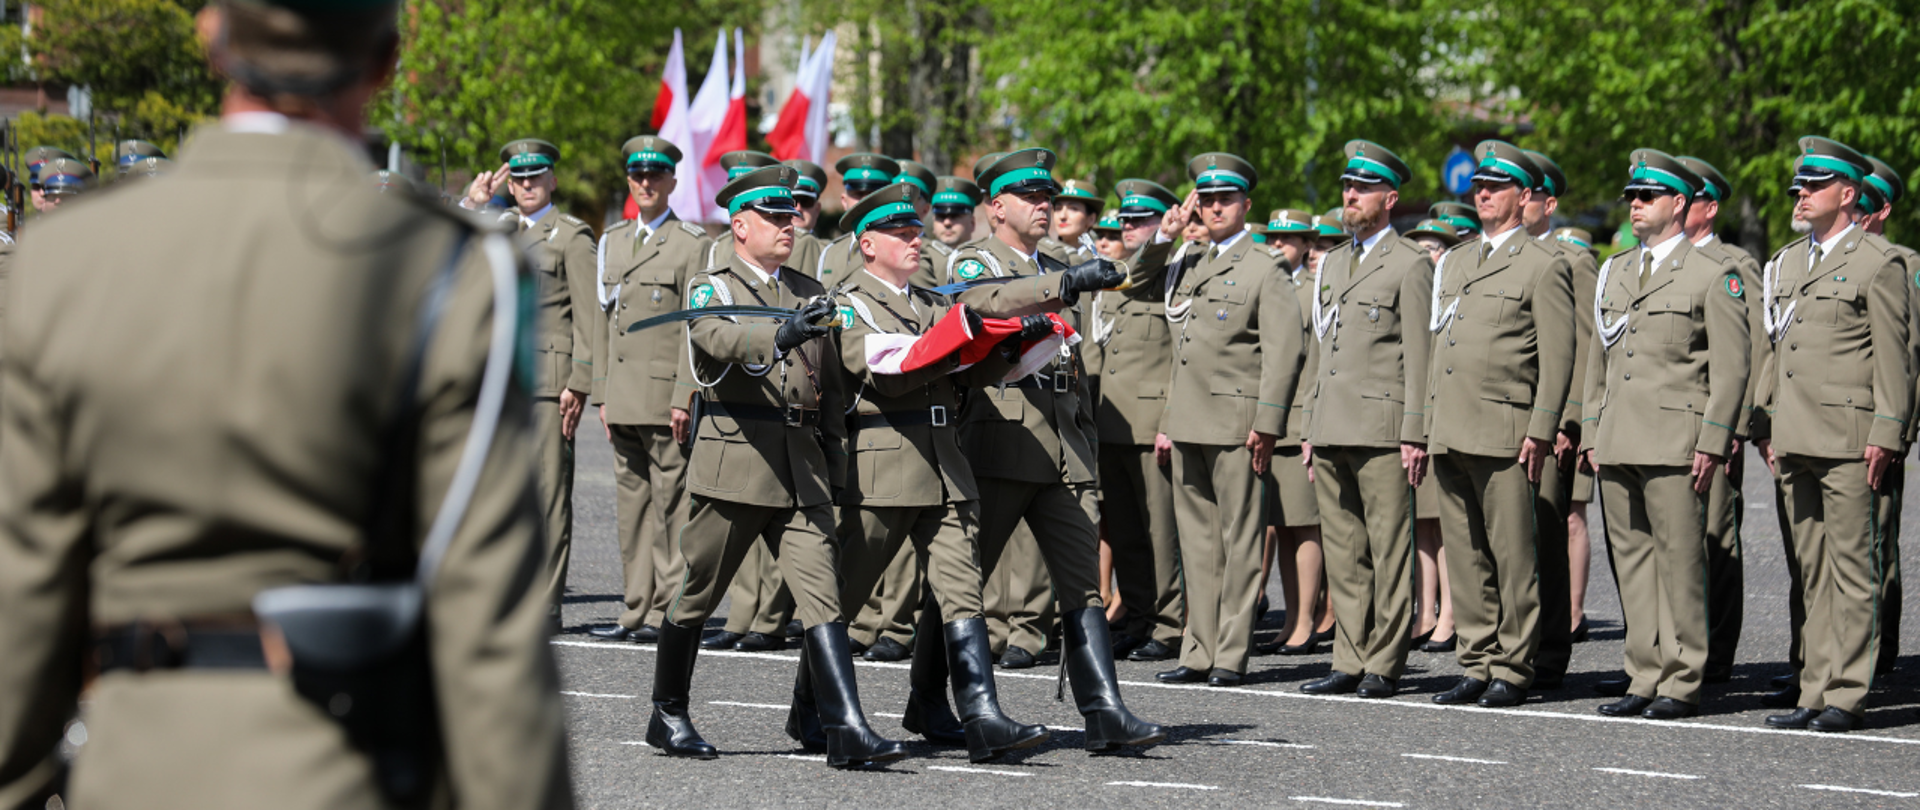 Funkcjonariusze Straży Granicznej niosący flagę Polski.